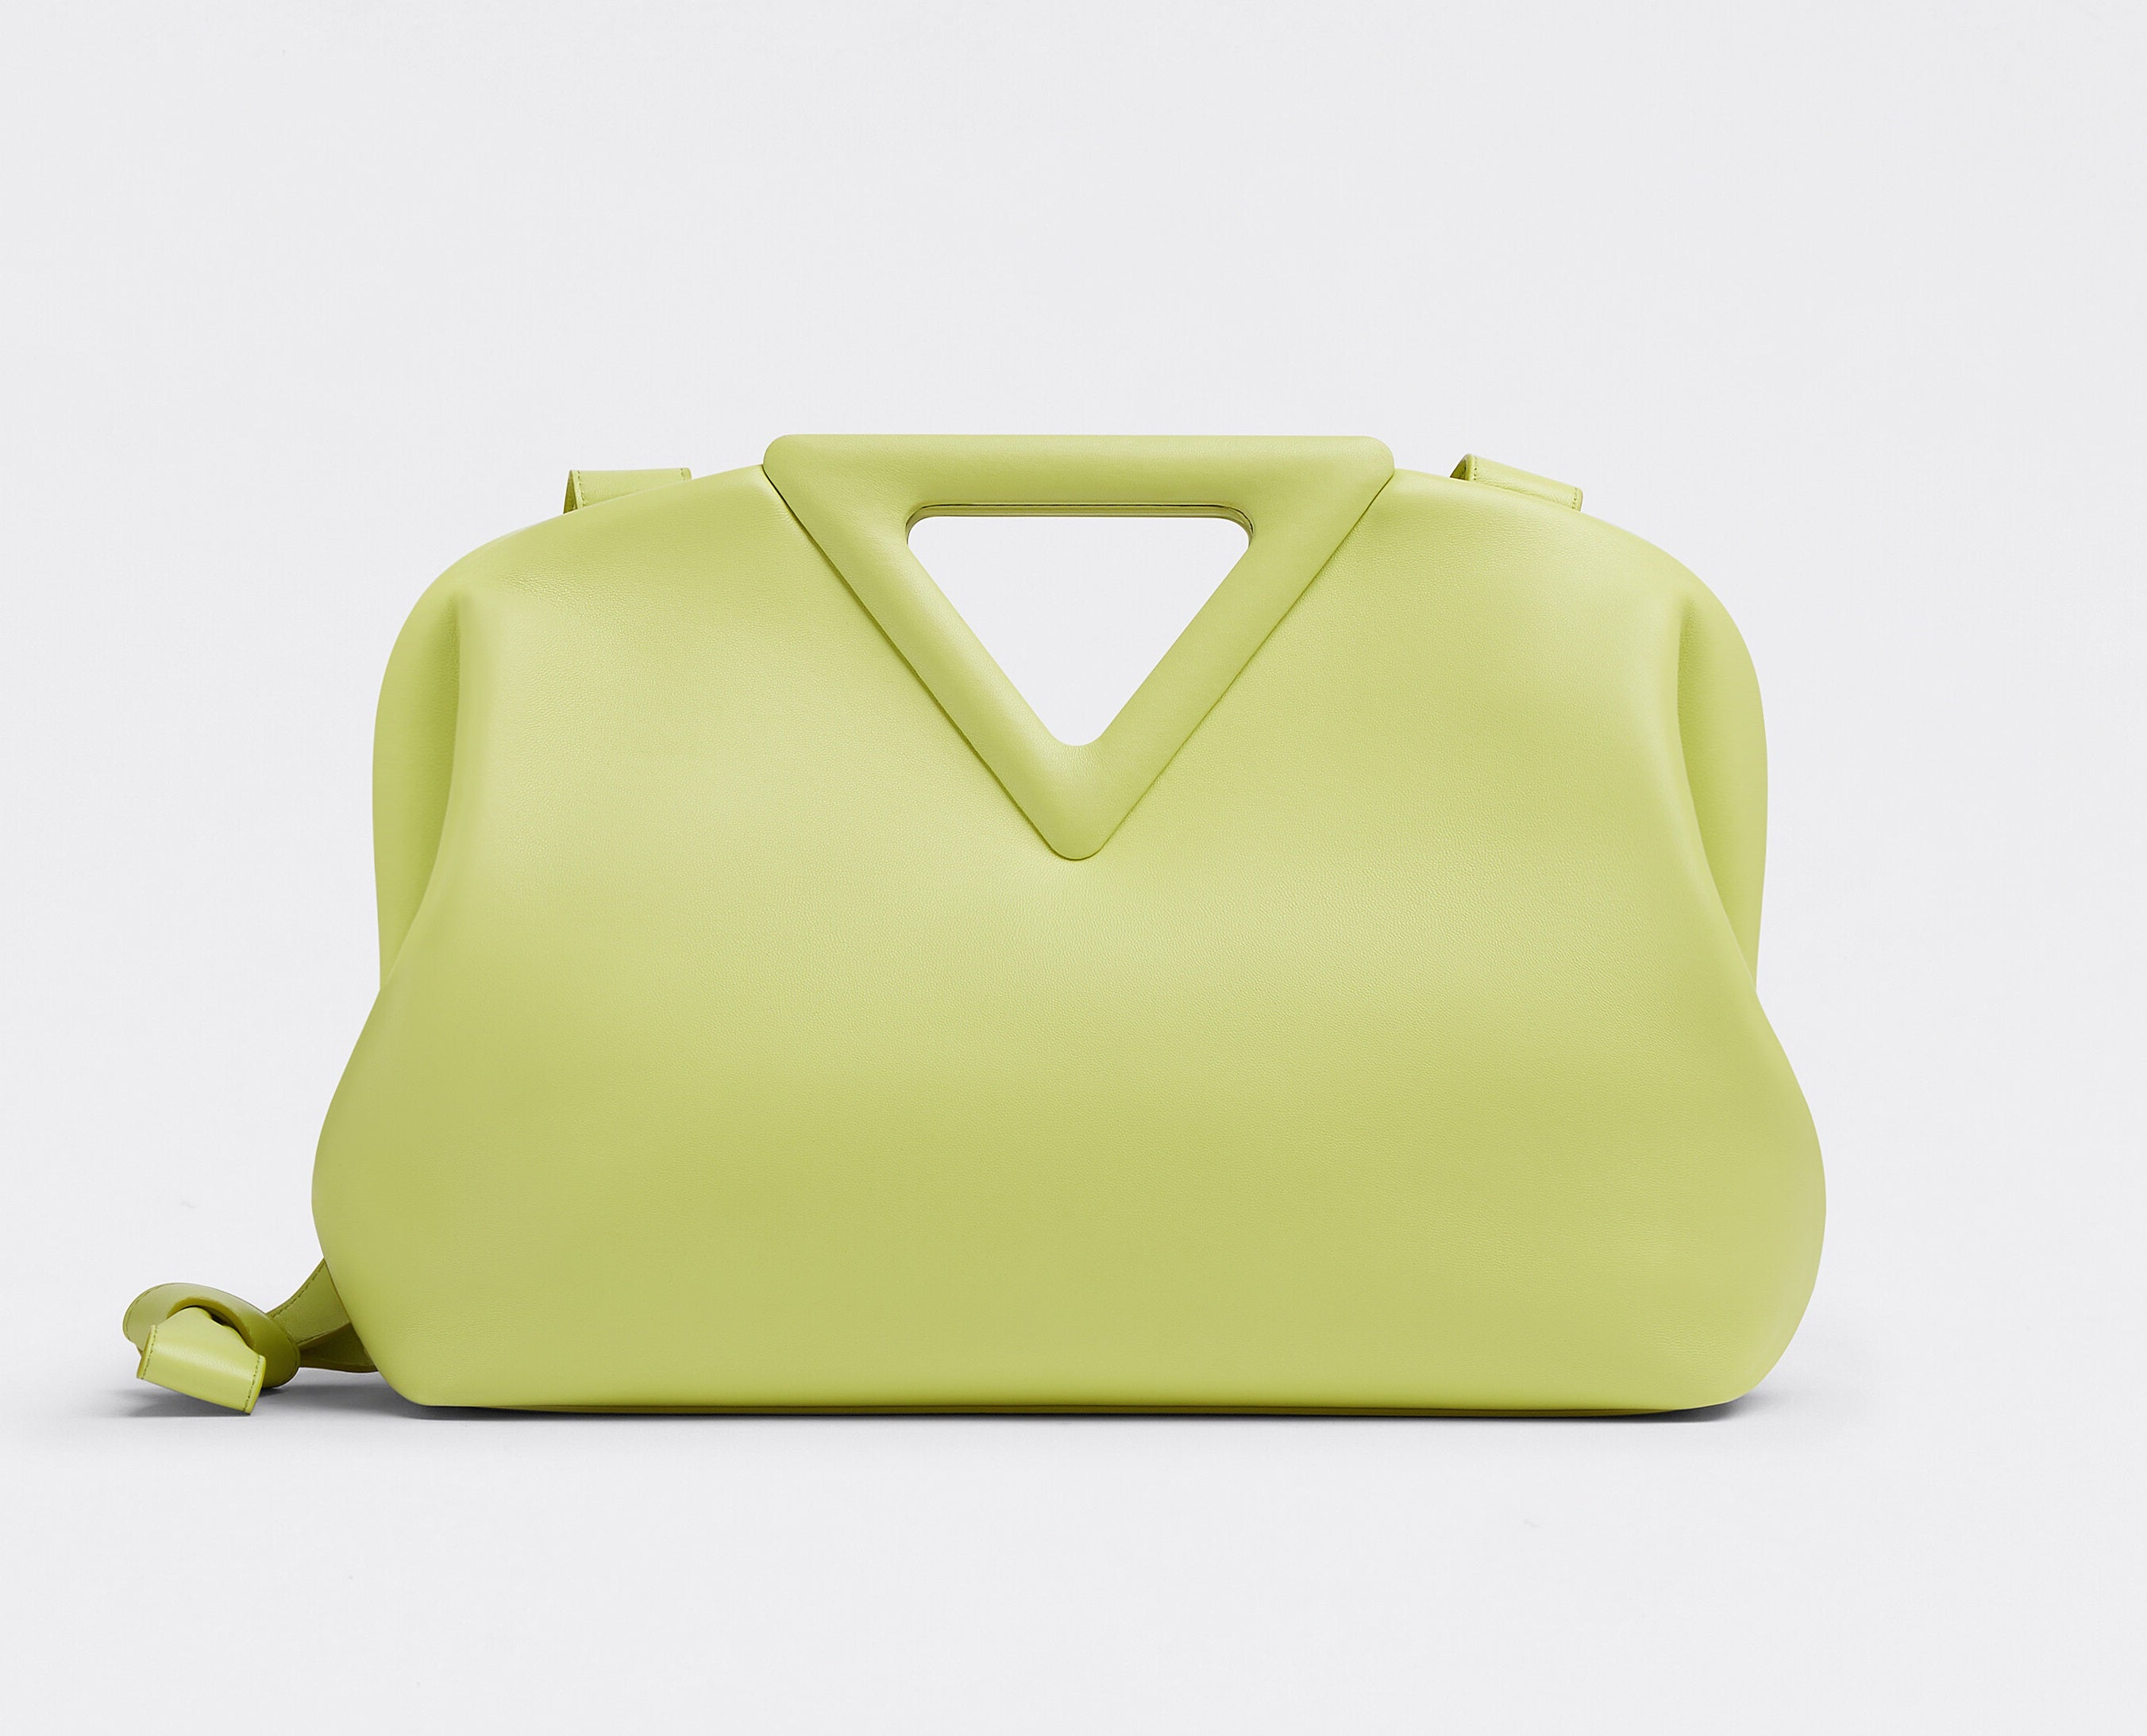 8 Hottest Handbags for Summer 2021 that Celebrities Like bottega veneta point bag